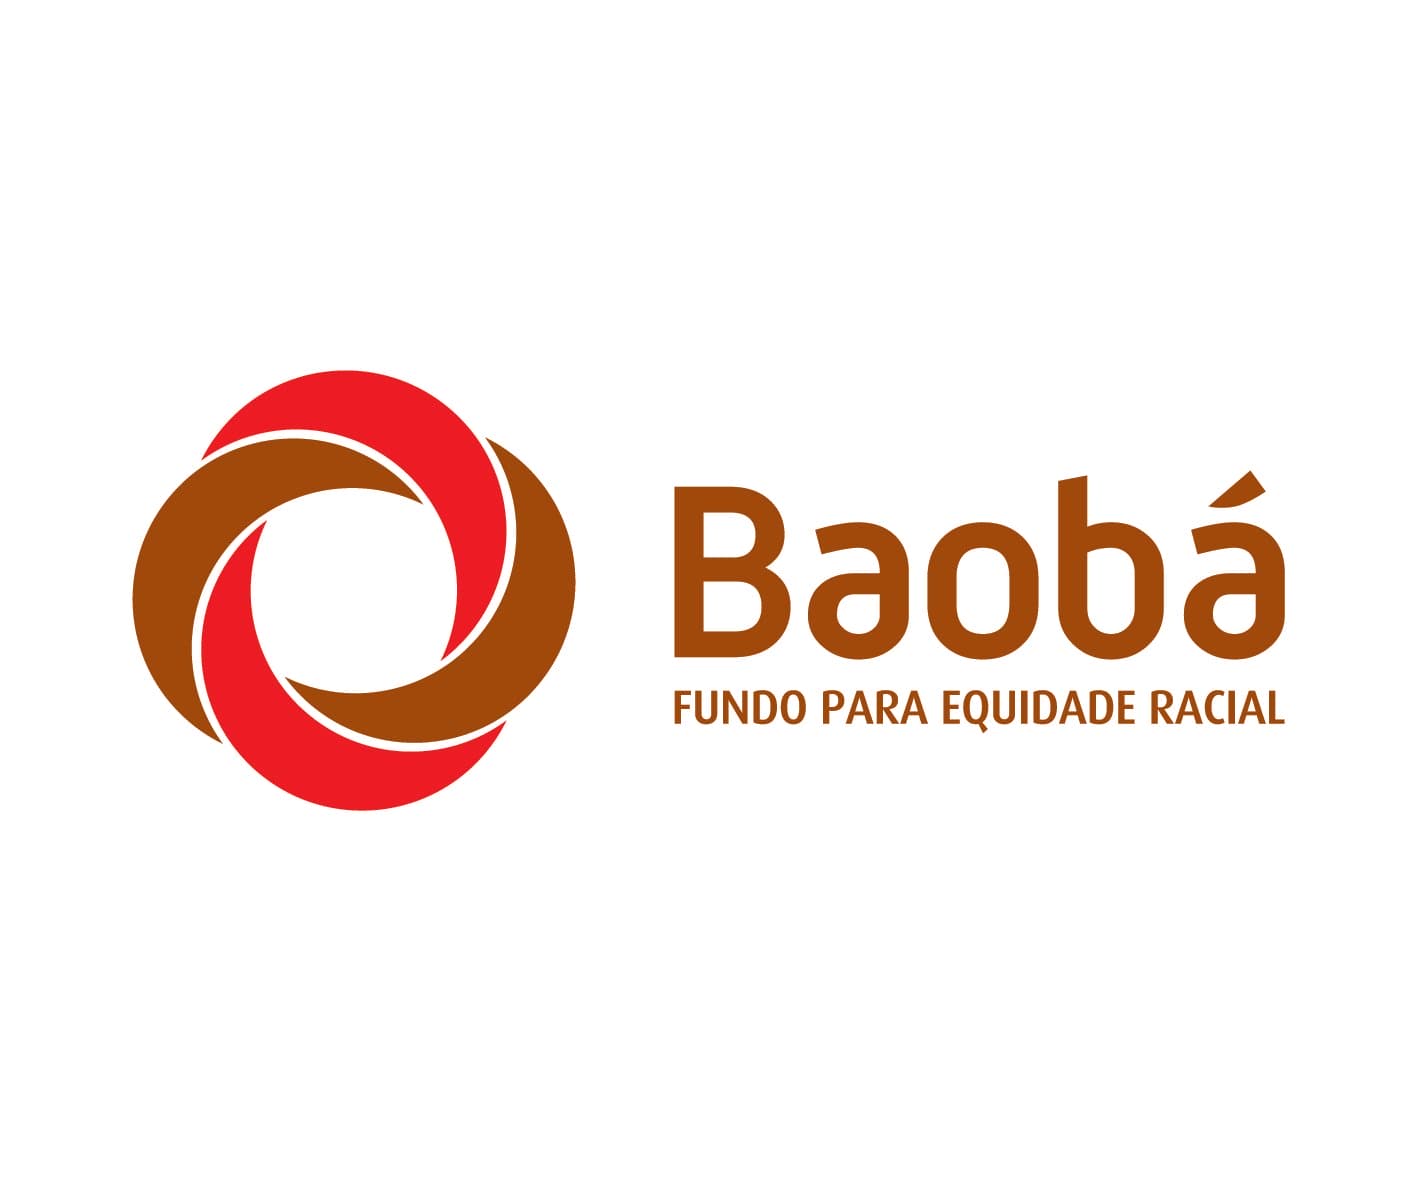 Fundo Baobá realiza aula inaugural do Programa Já É – Educação e Equidade Racial